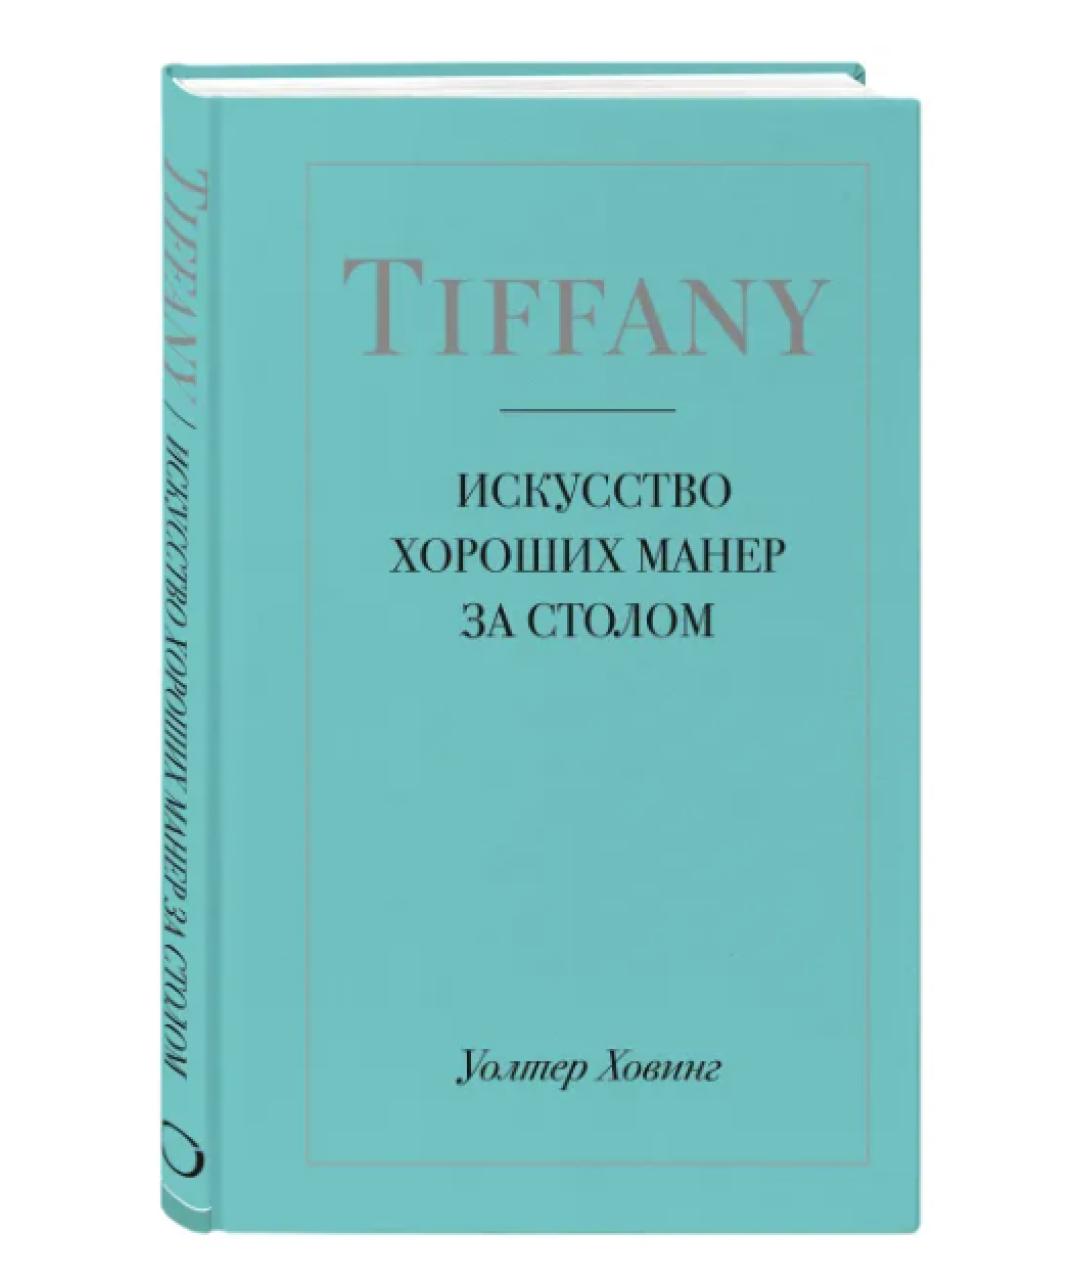 TIFFANY&CO Книга, фото 1